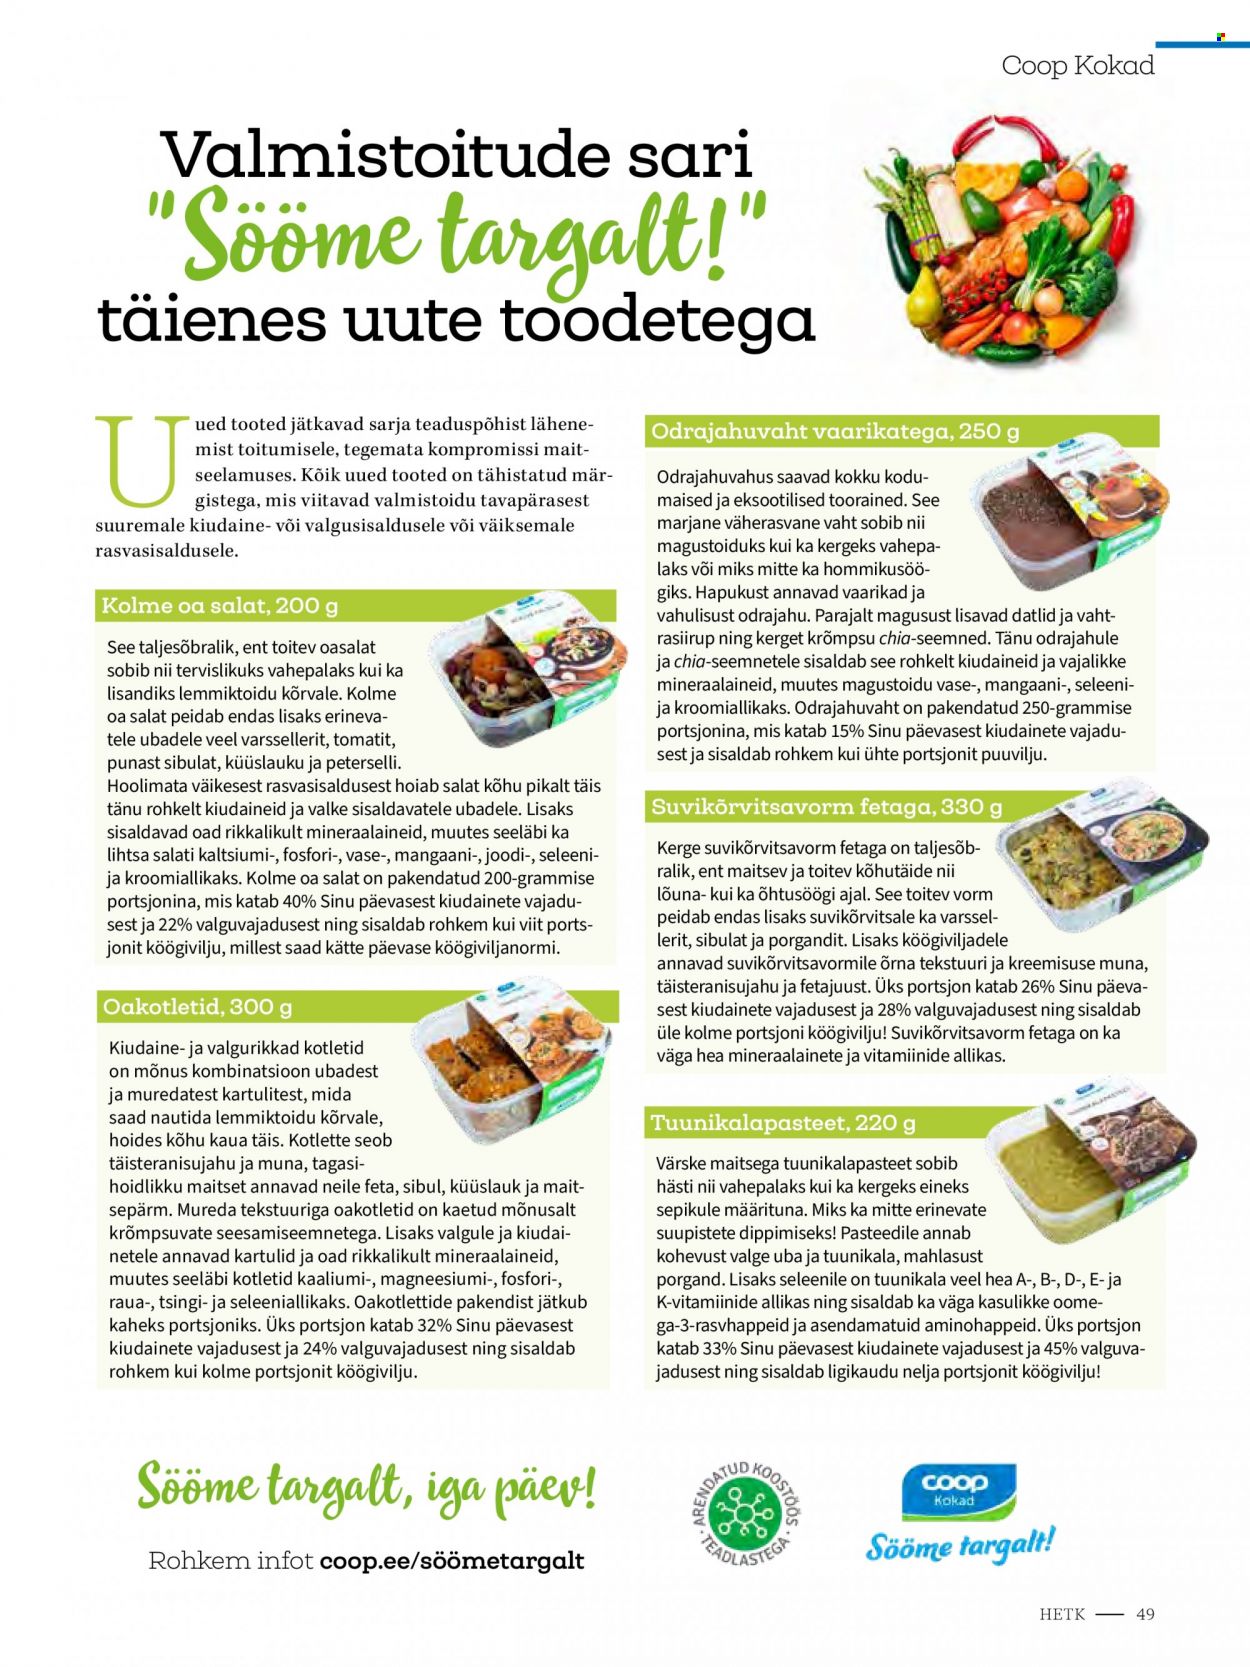 thumbnail - Kaupluse Coop kliendileht - soodustooted - kartulid, küüslauk, porgand, salat, sibul, vaarikad, feta, võid, chia. Lehekülg 49.